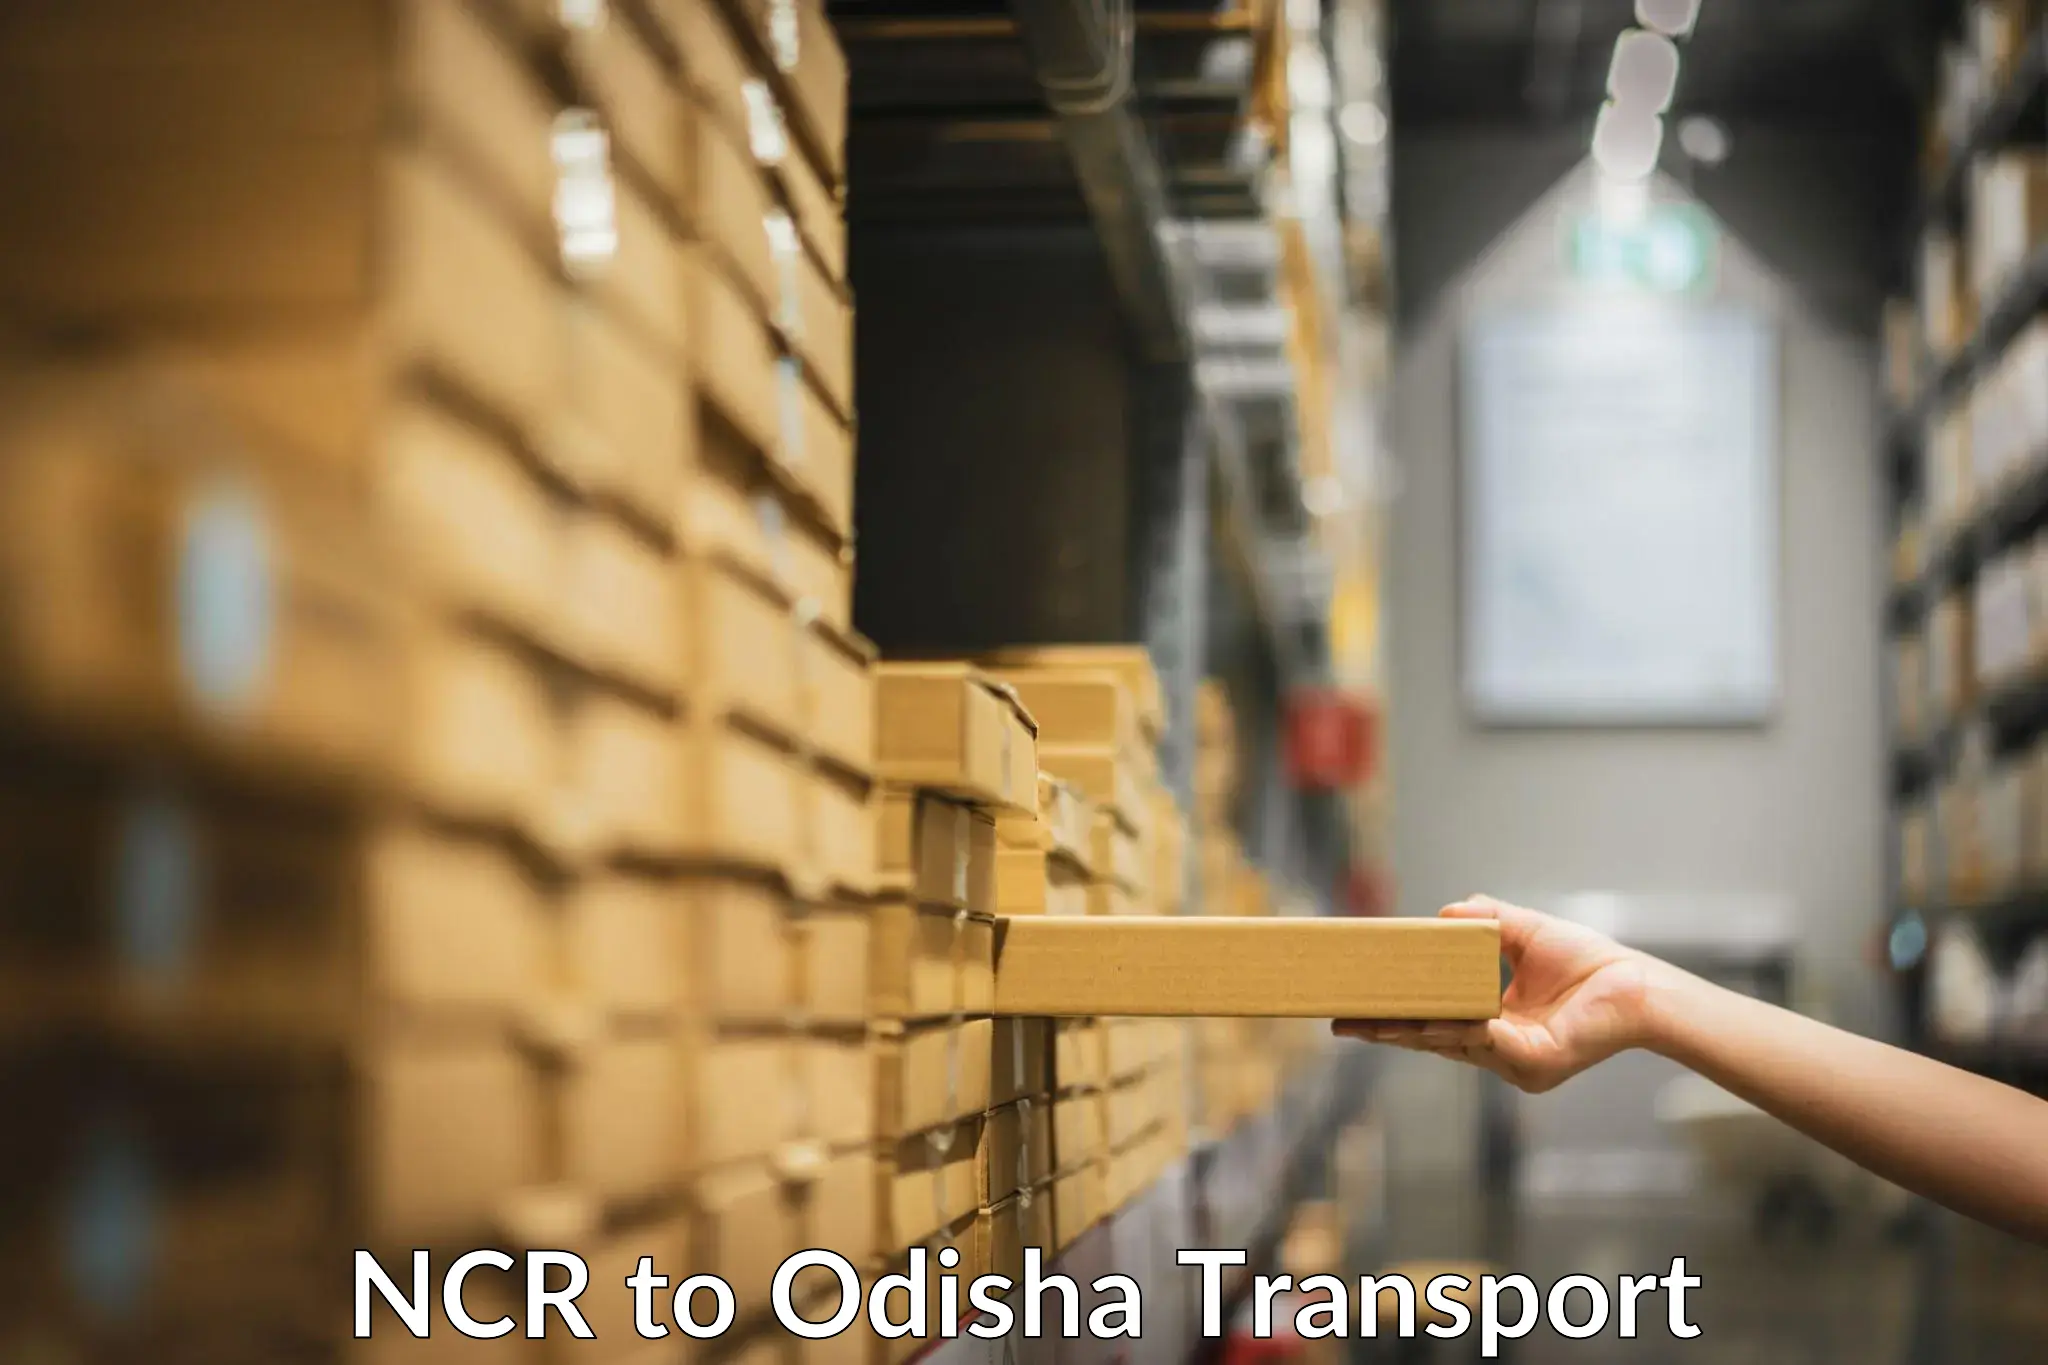 Cargo transport services NCR to Morada